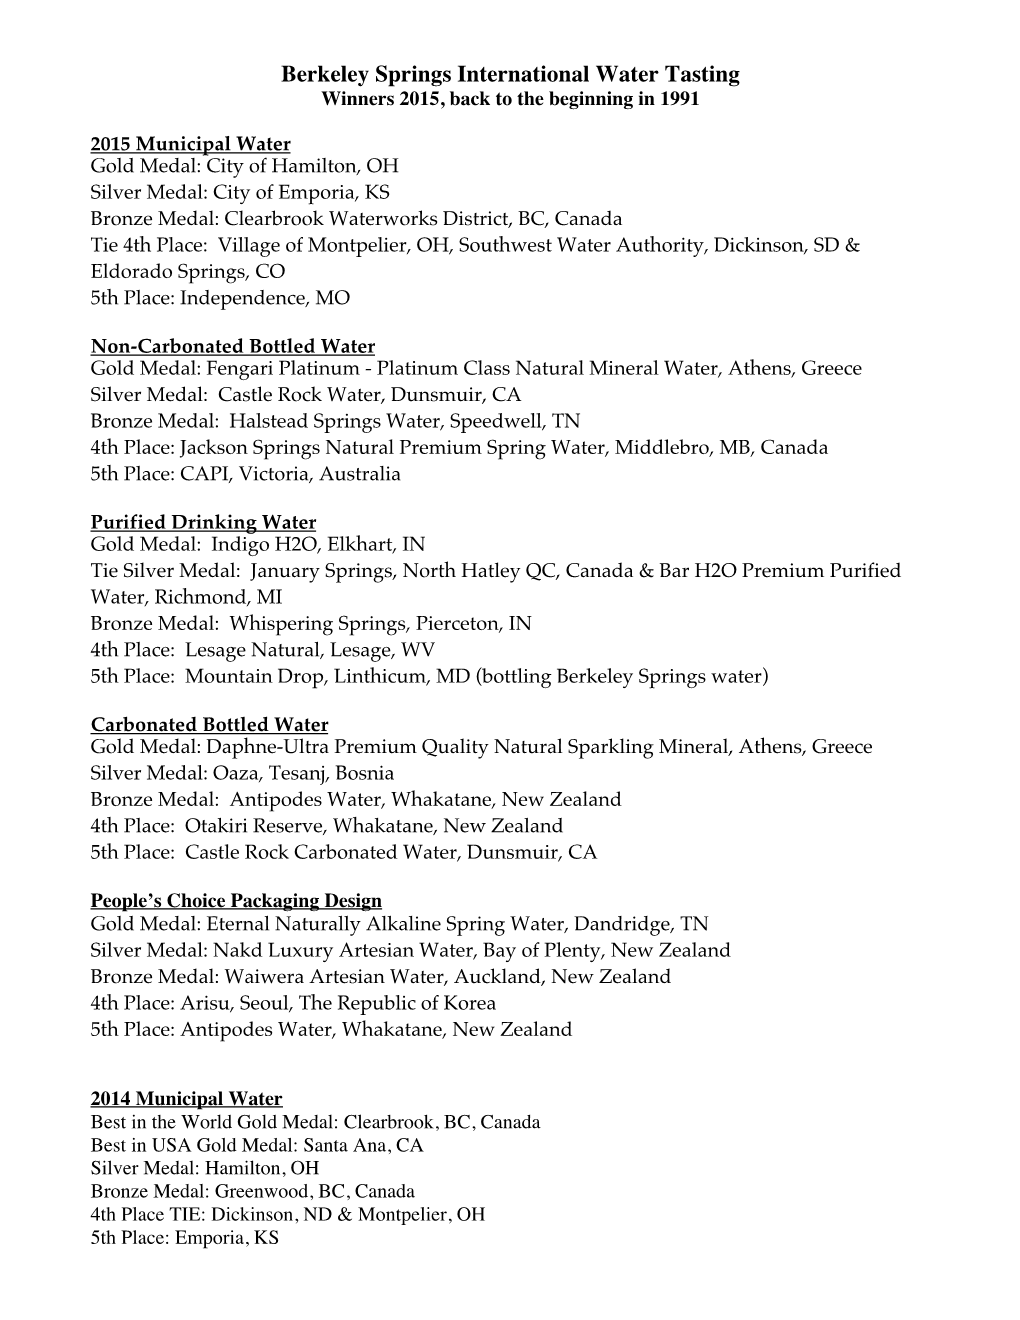 Berkeley Springs International Water Tasting Winners 2015, Back to the Beginning in 1991